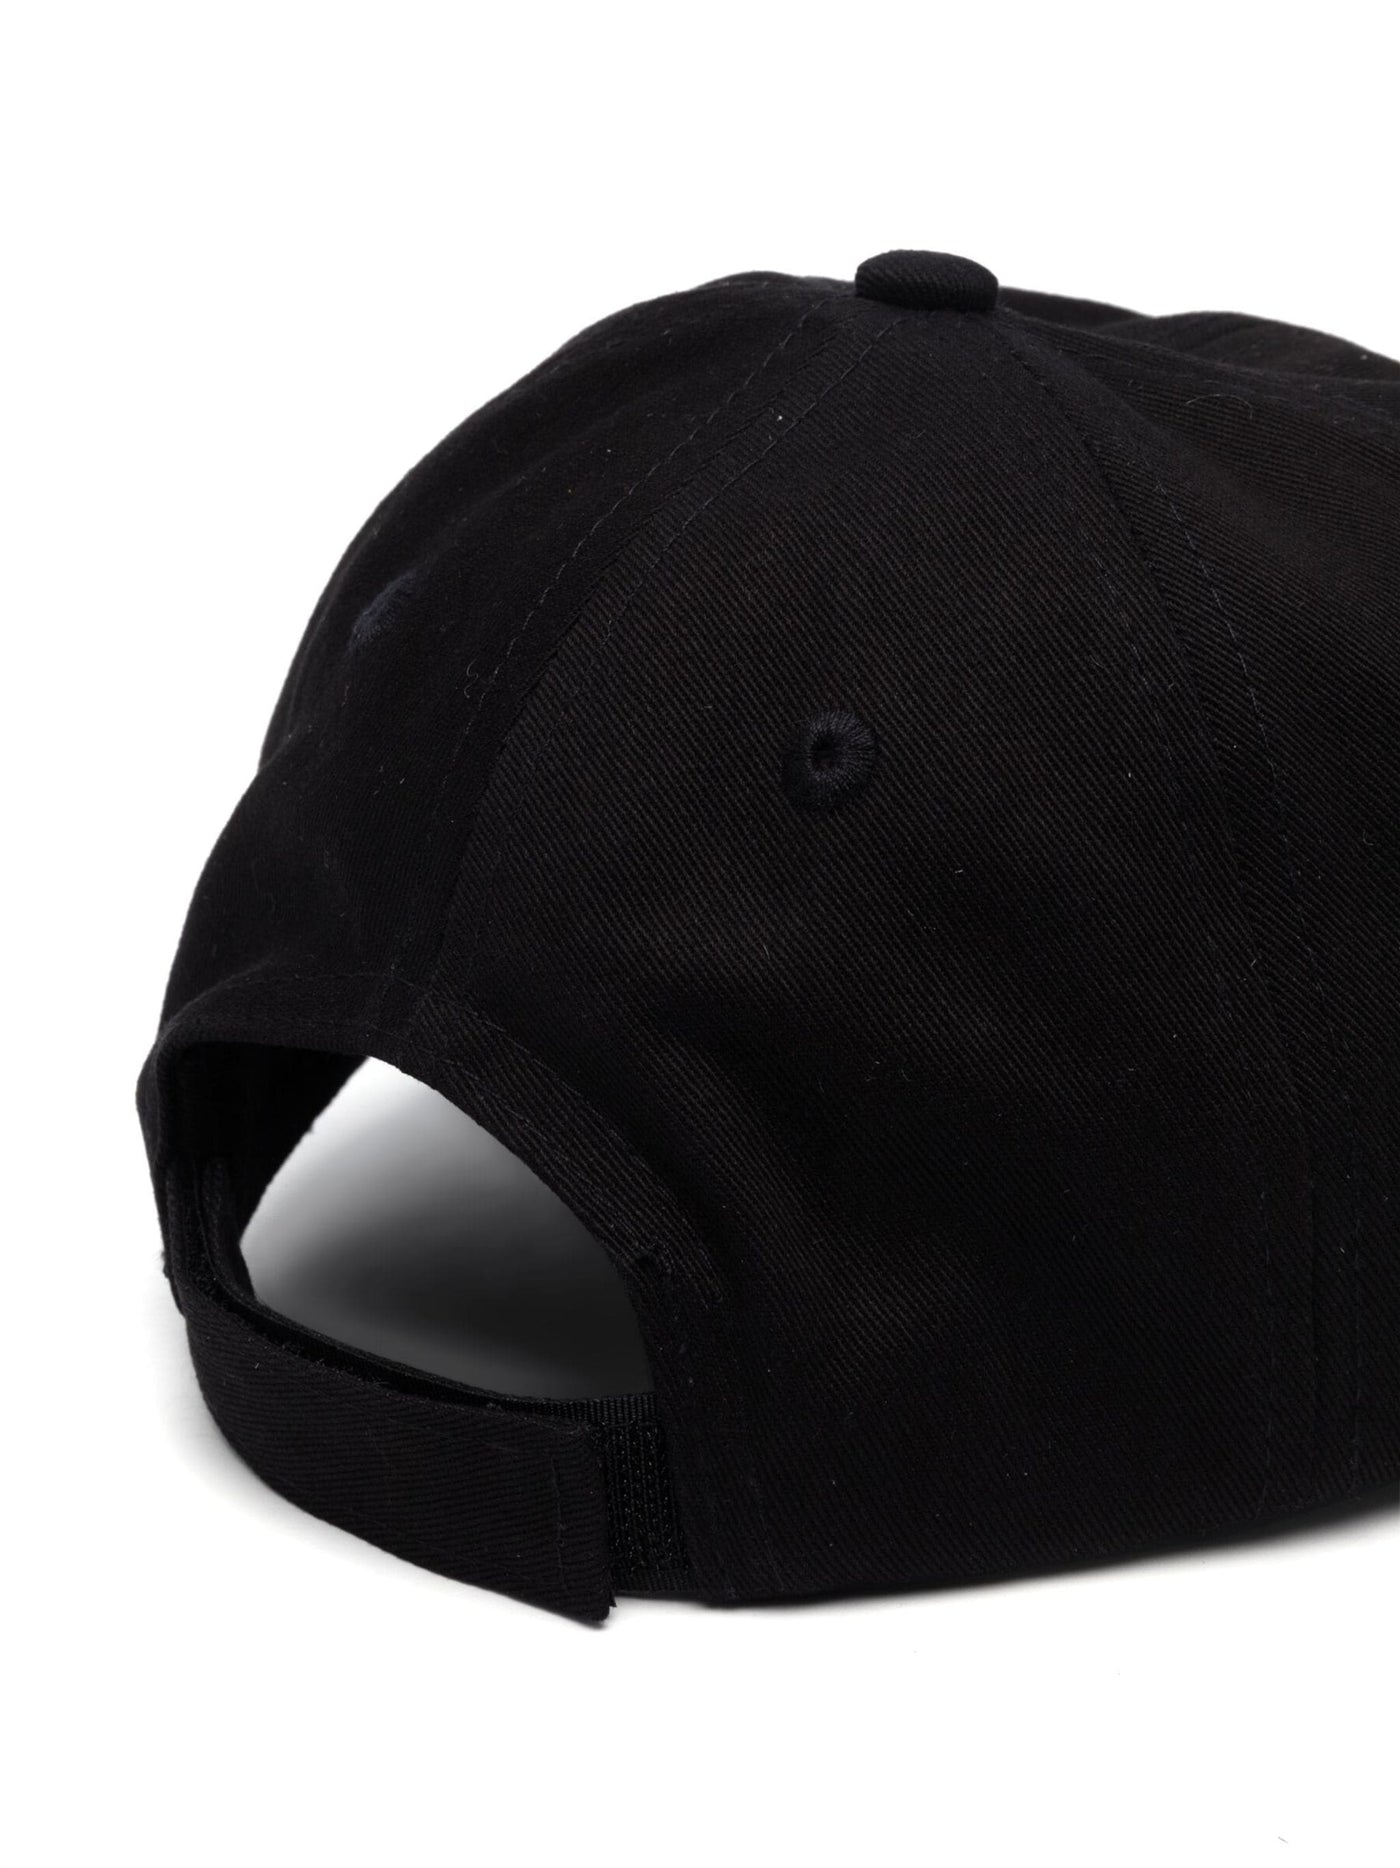 Black cotton canvas boy PALM ANEGLS baseball cap